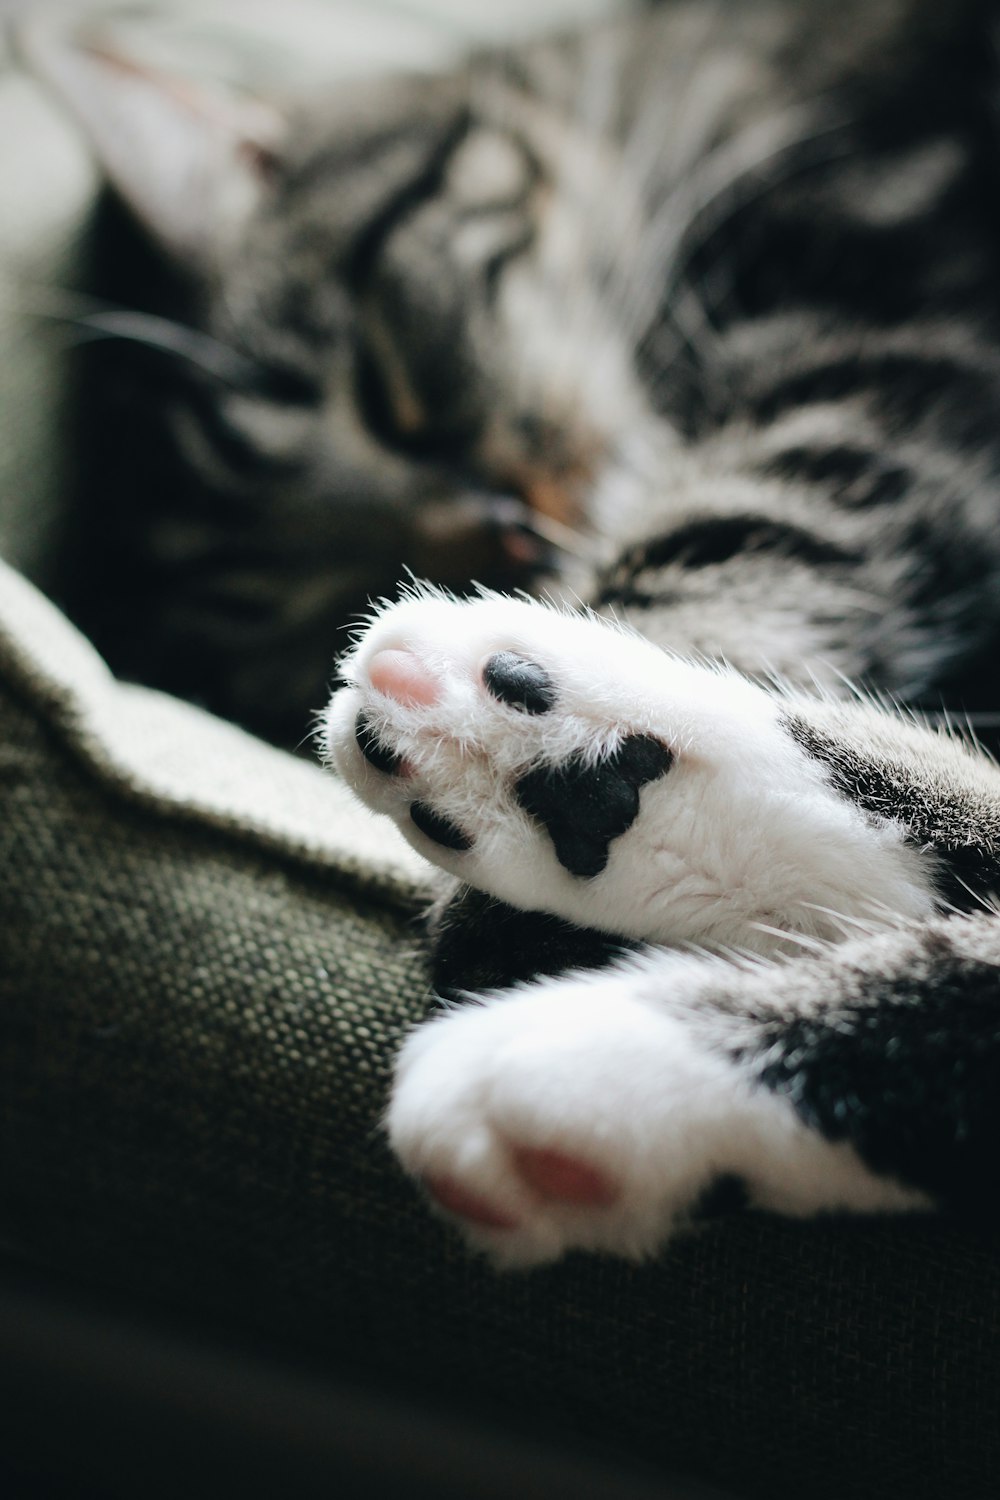 fotografia em close-up da pata de gato tabby branca e preta